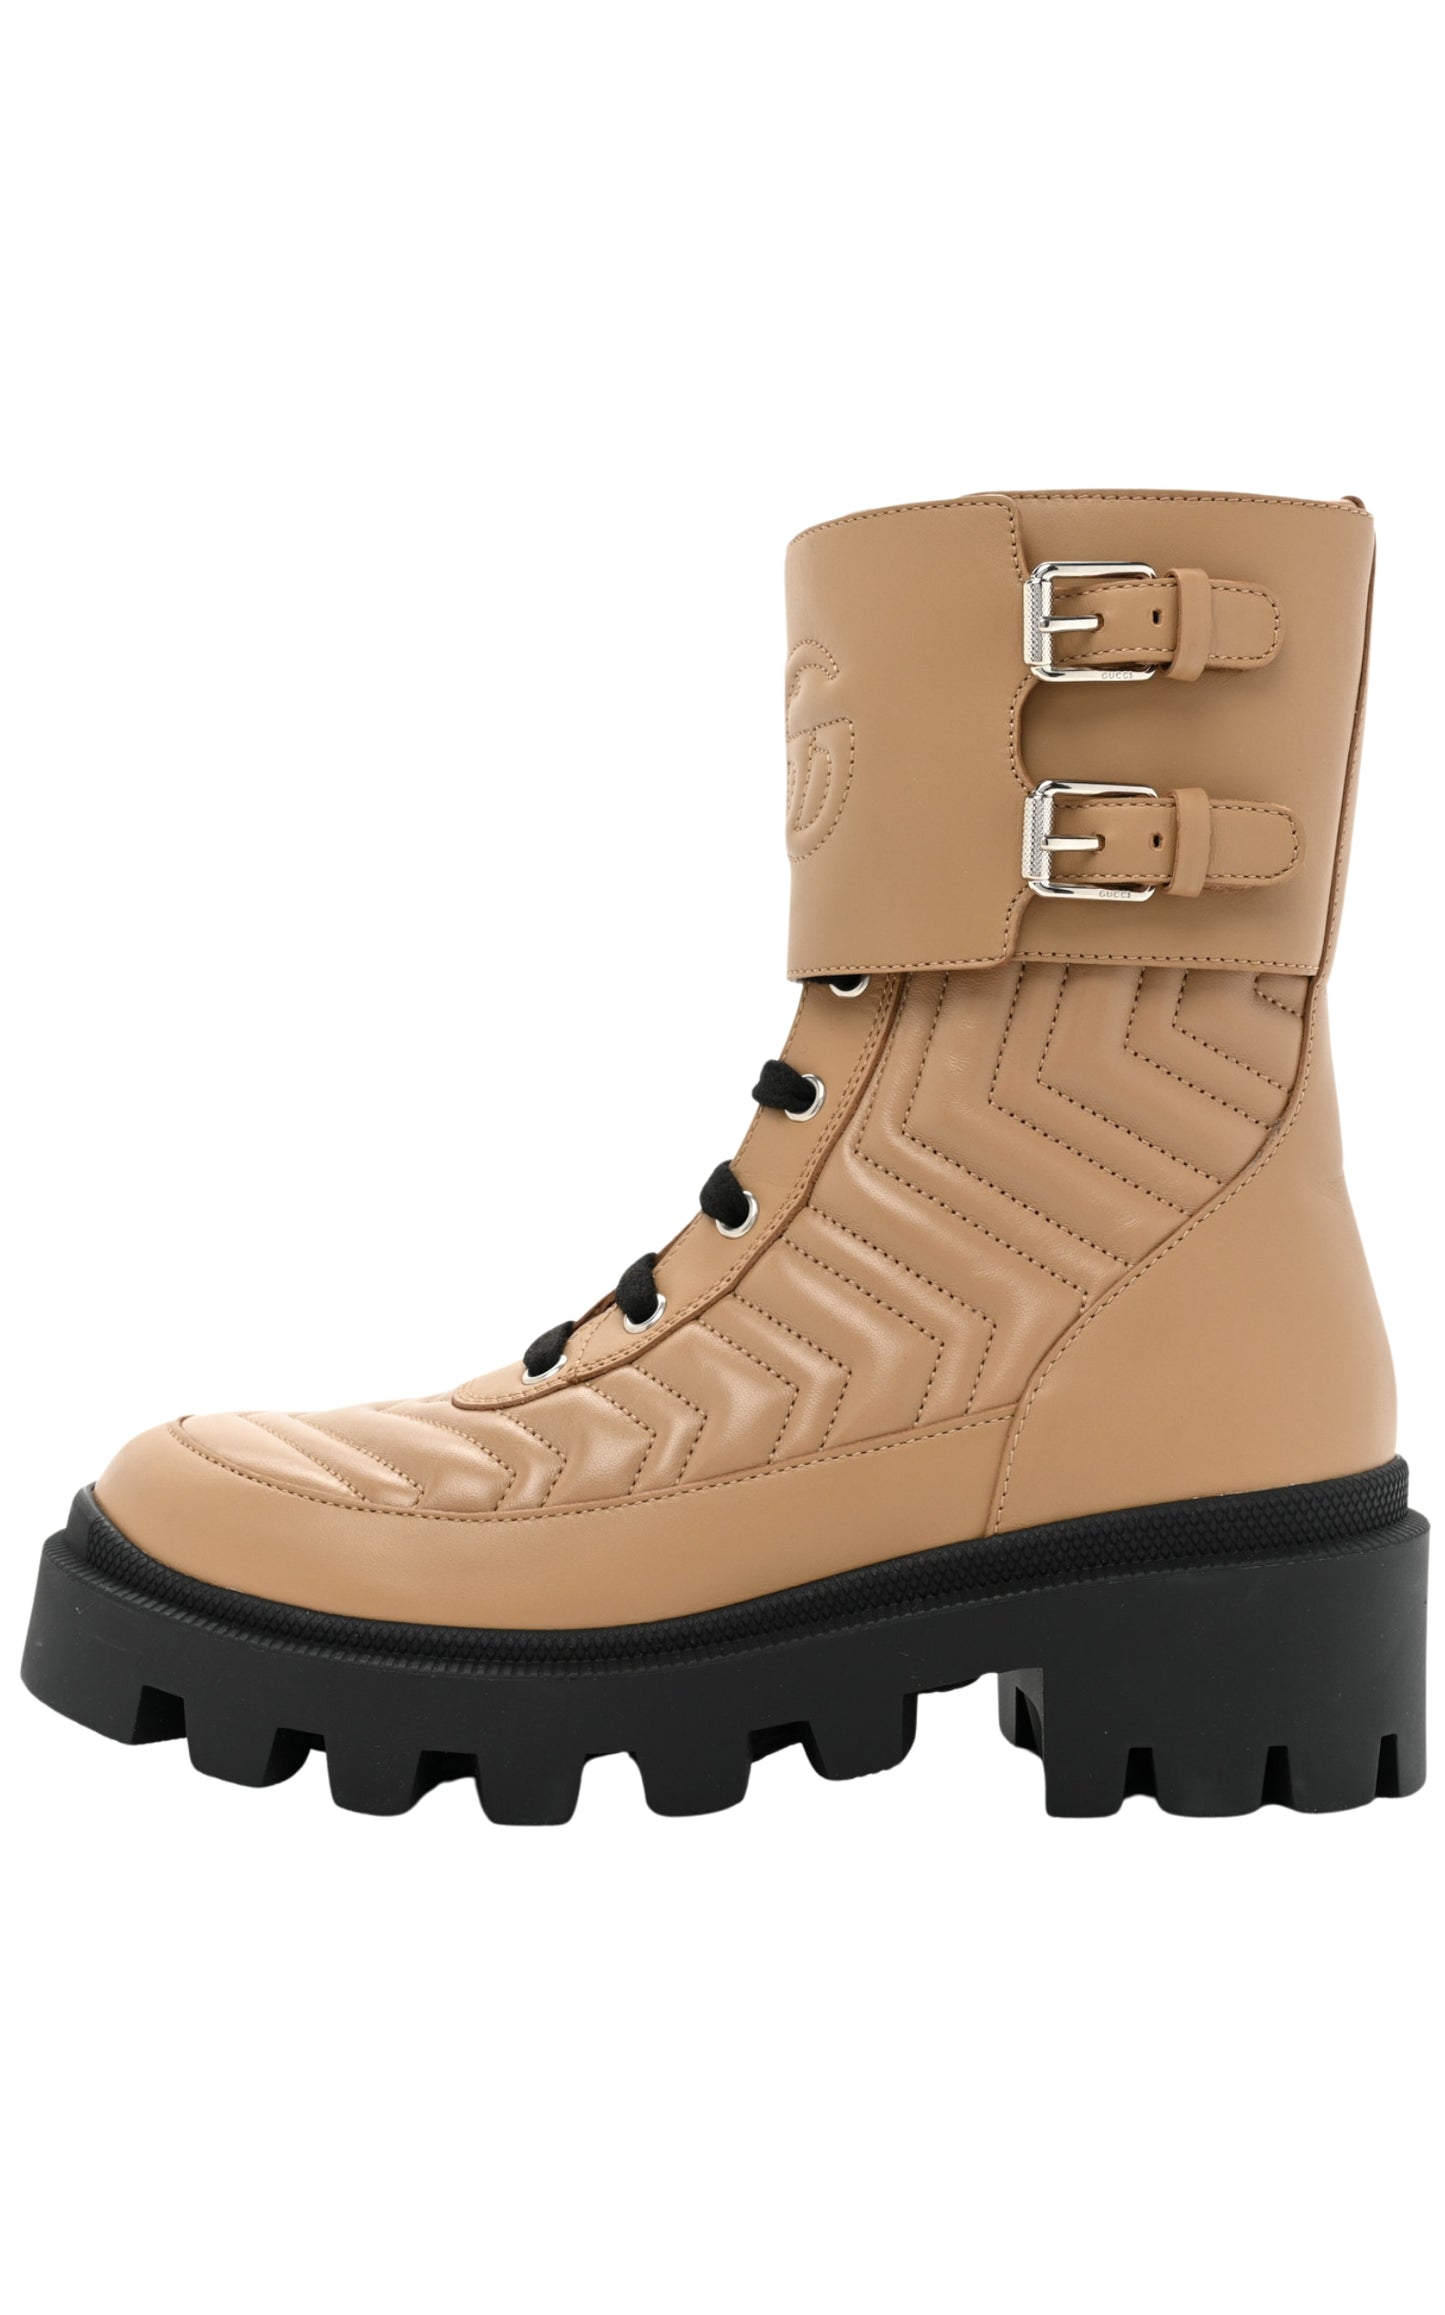 Frances Leather Combat Boots